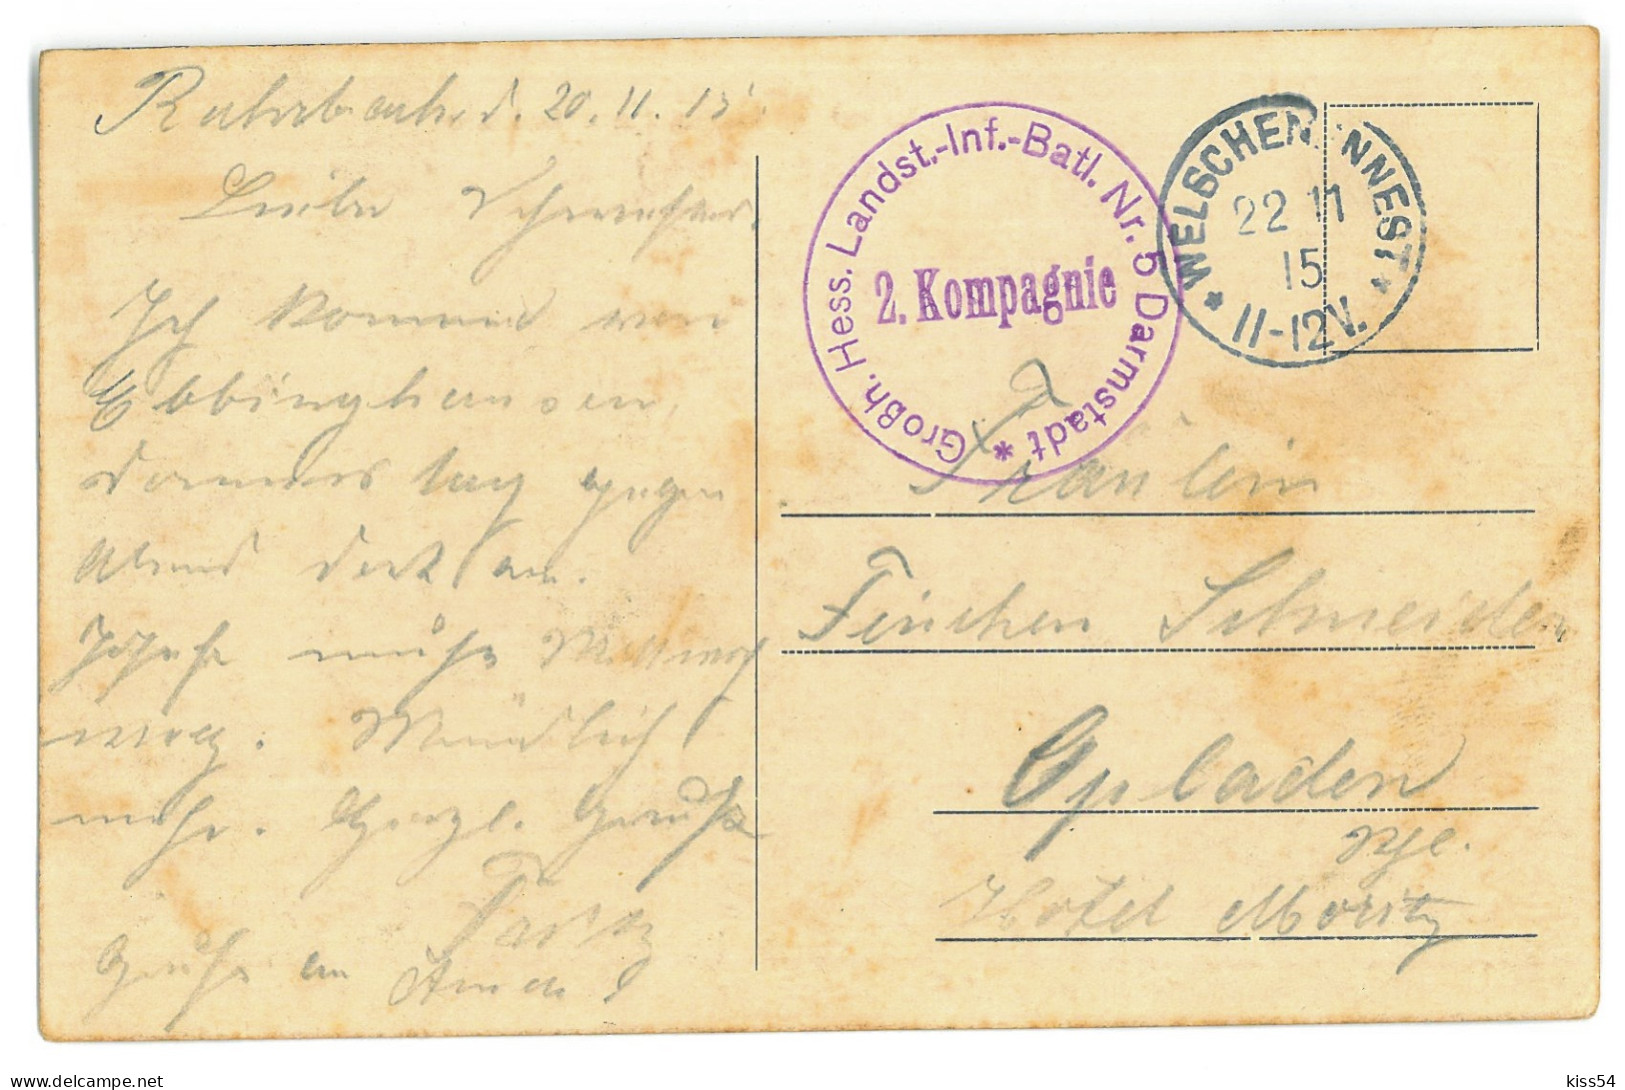 BL 38 - 21975 GRODNO, High School, Belarus - Old Postcard, CENSOR - Used - 1915 - Belarus